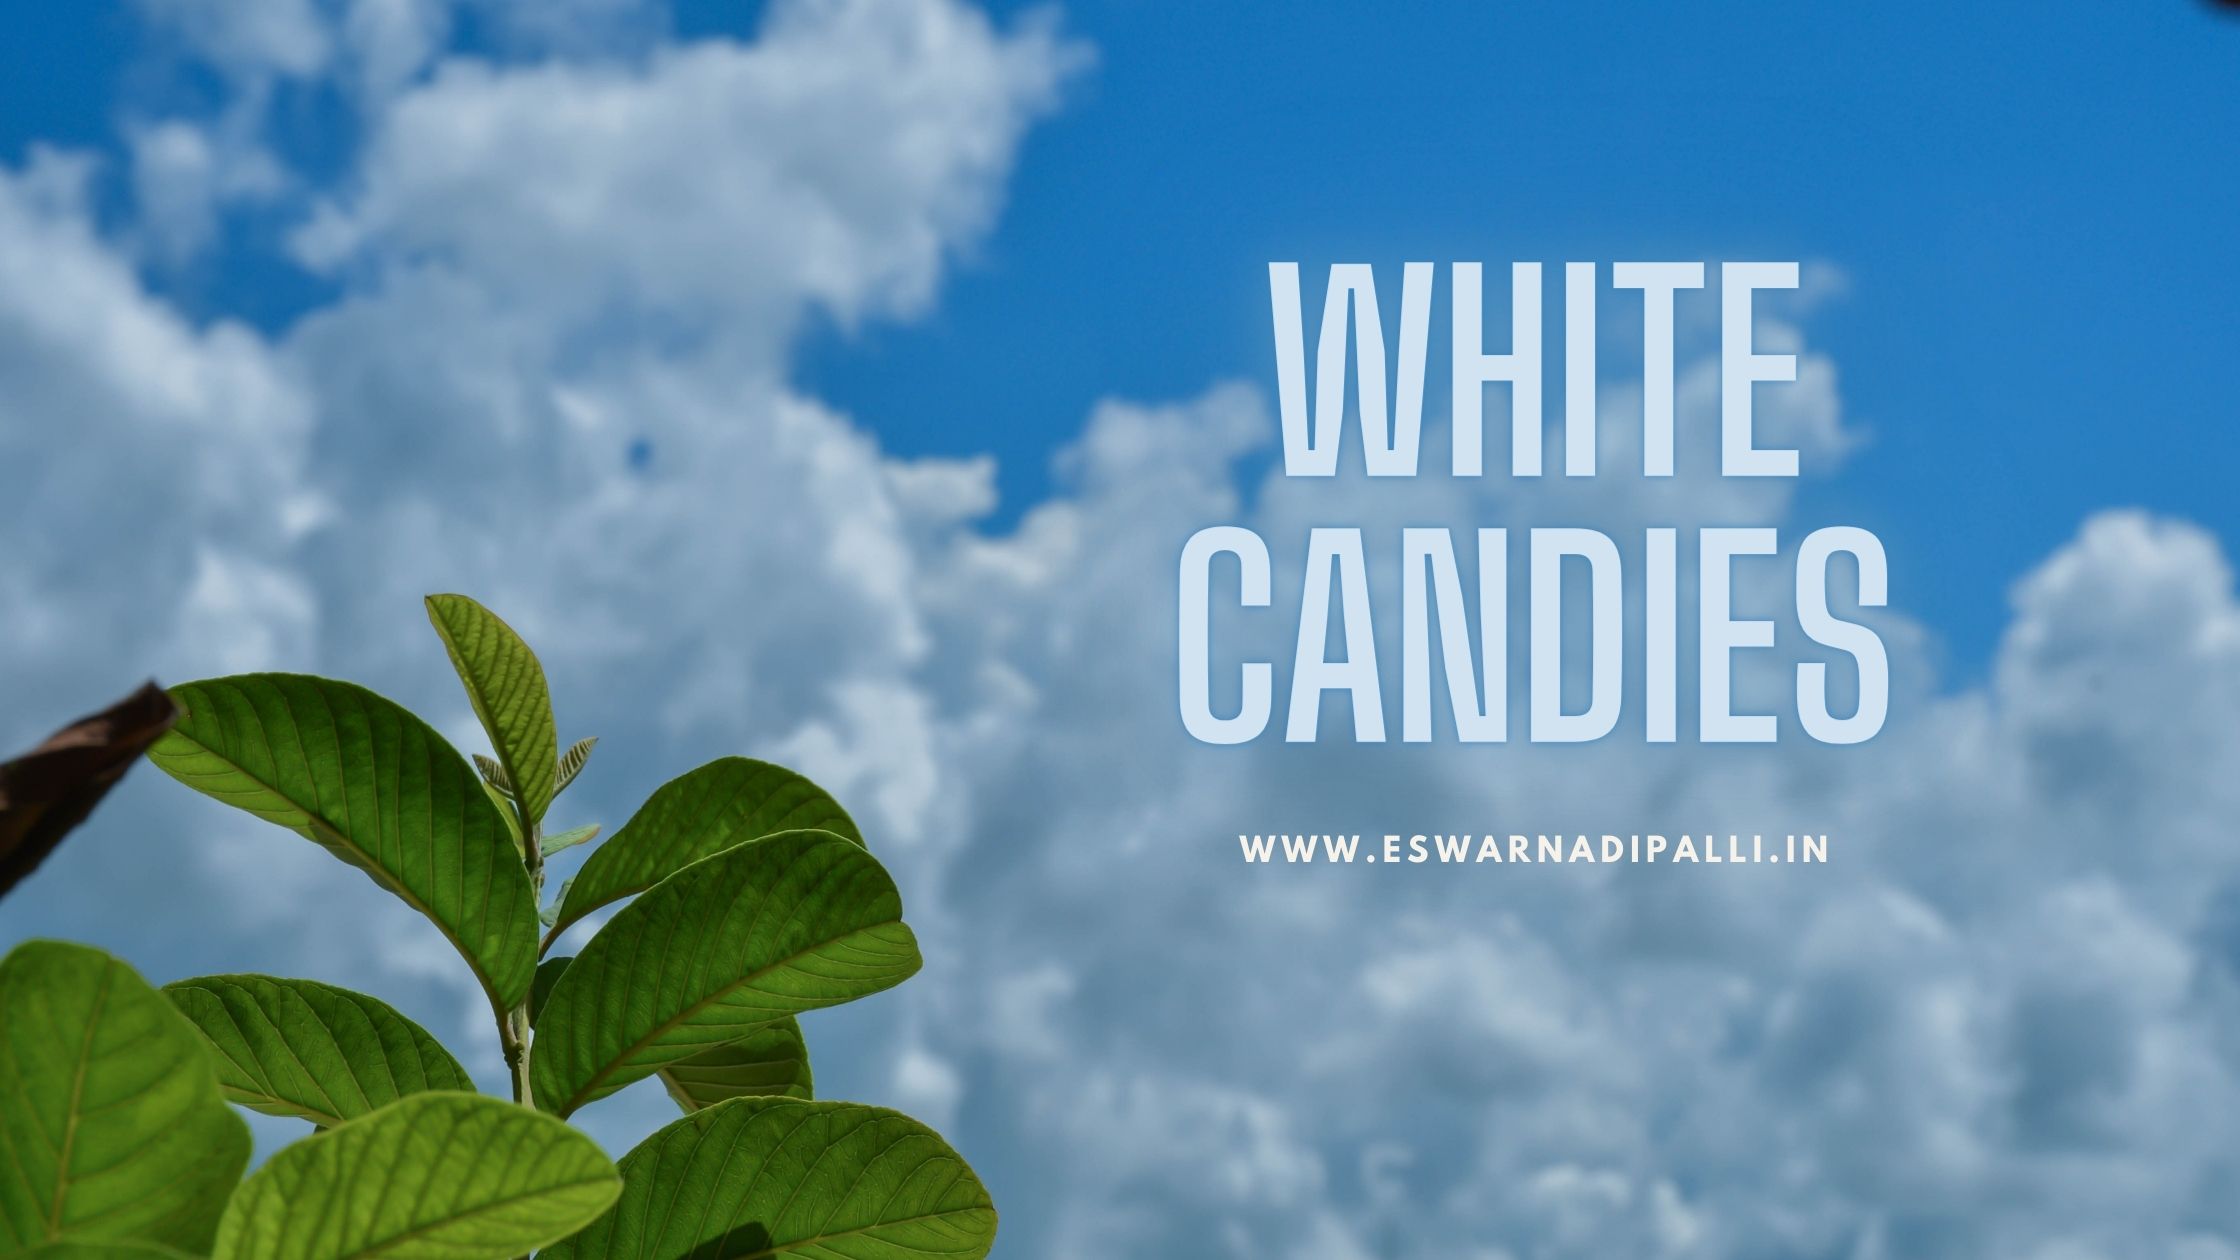 WHITE CANDIES